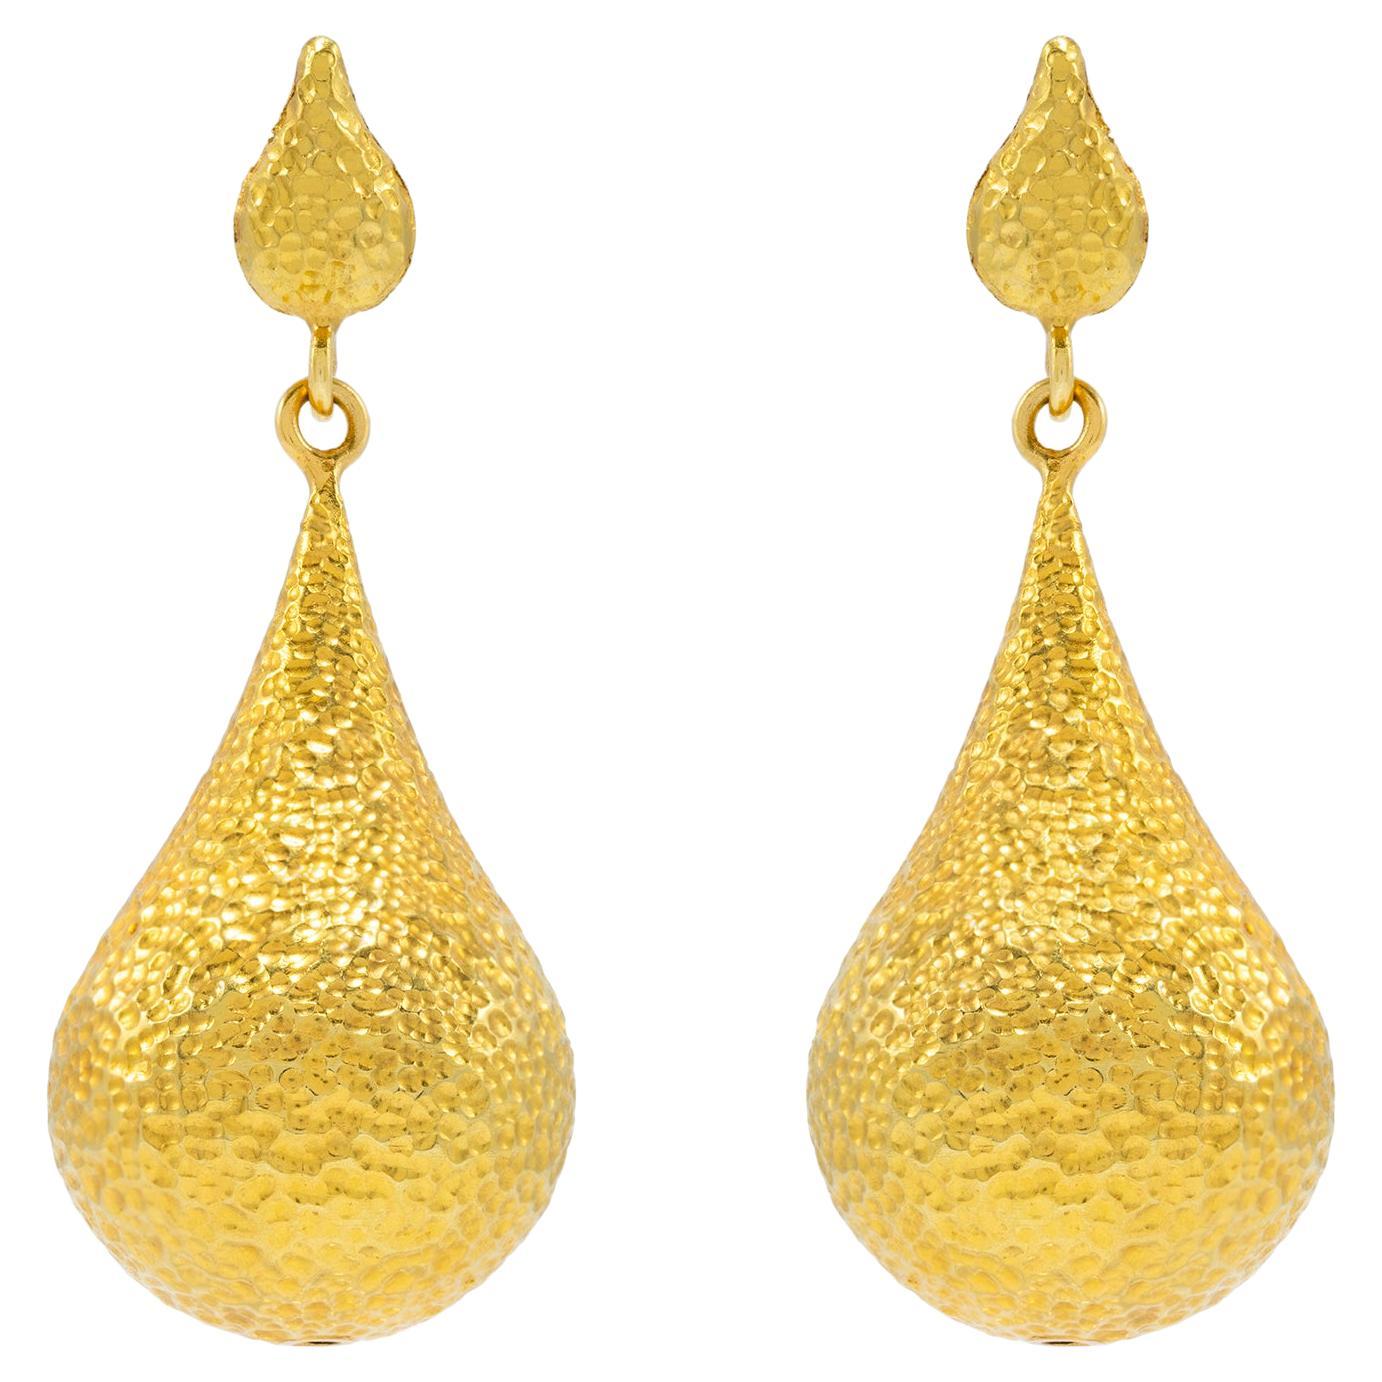 Bali 20k Gold Earrings, by Tagili